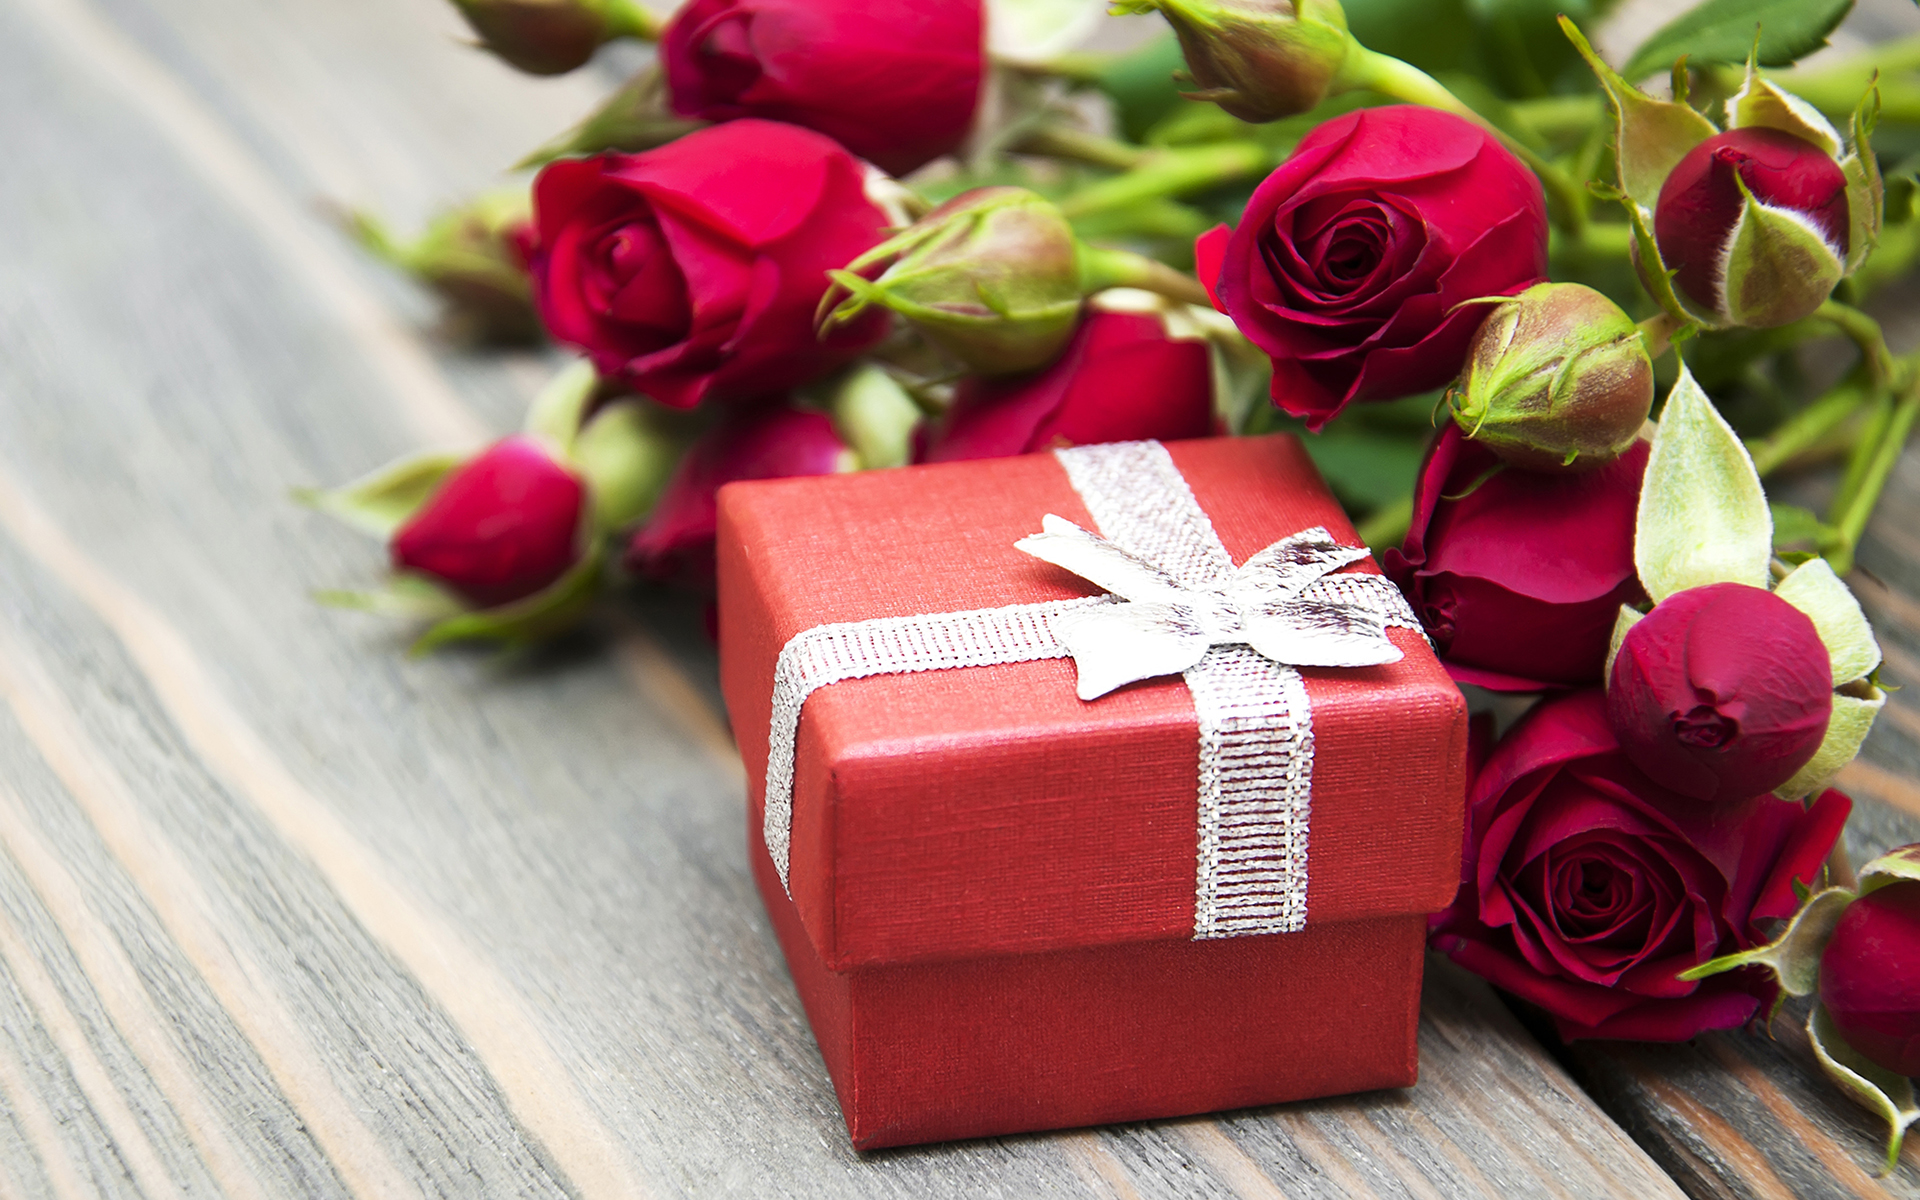 Скачать обои бесплатно Роза, Подарки, День Святого Валентина, Праздничные картинка на рабочий стол ПК